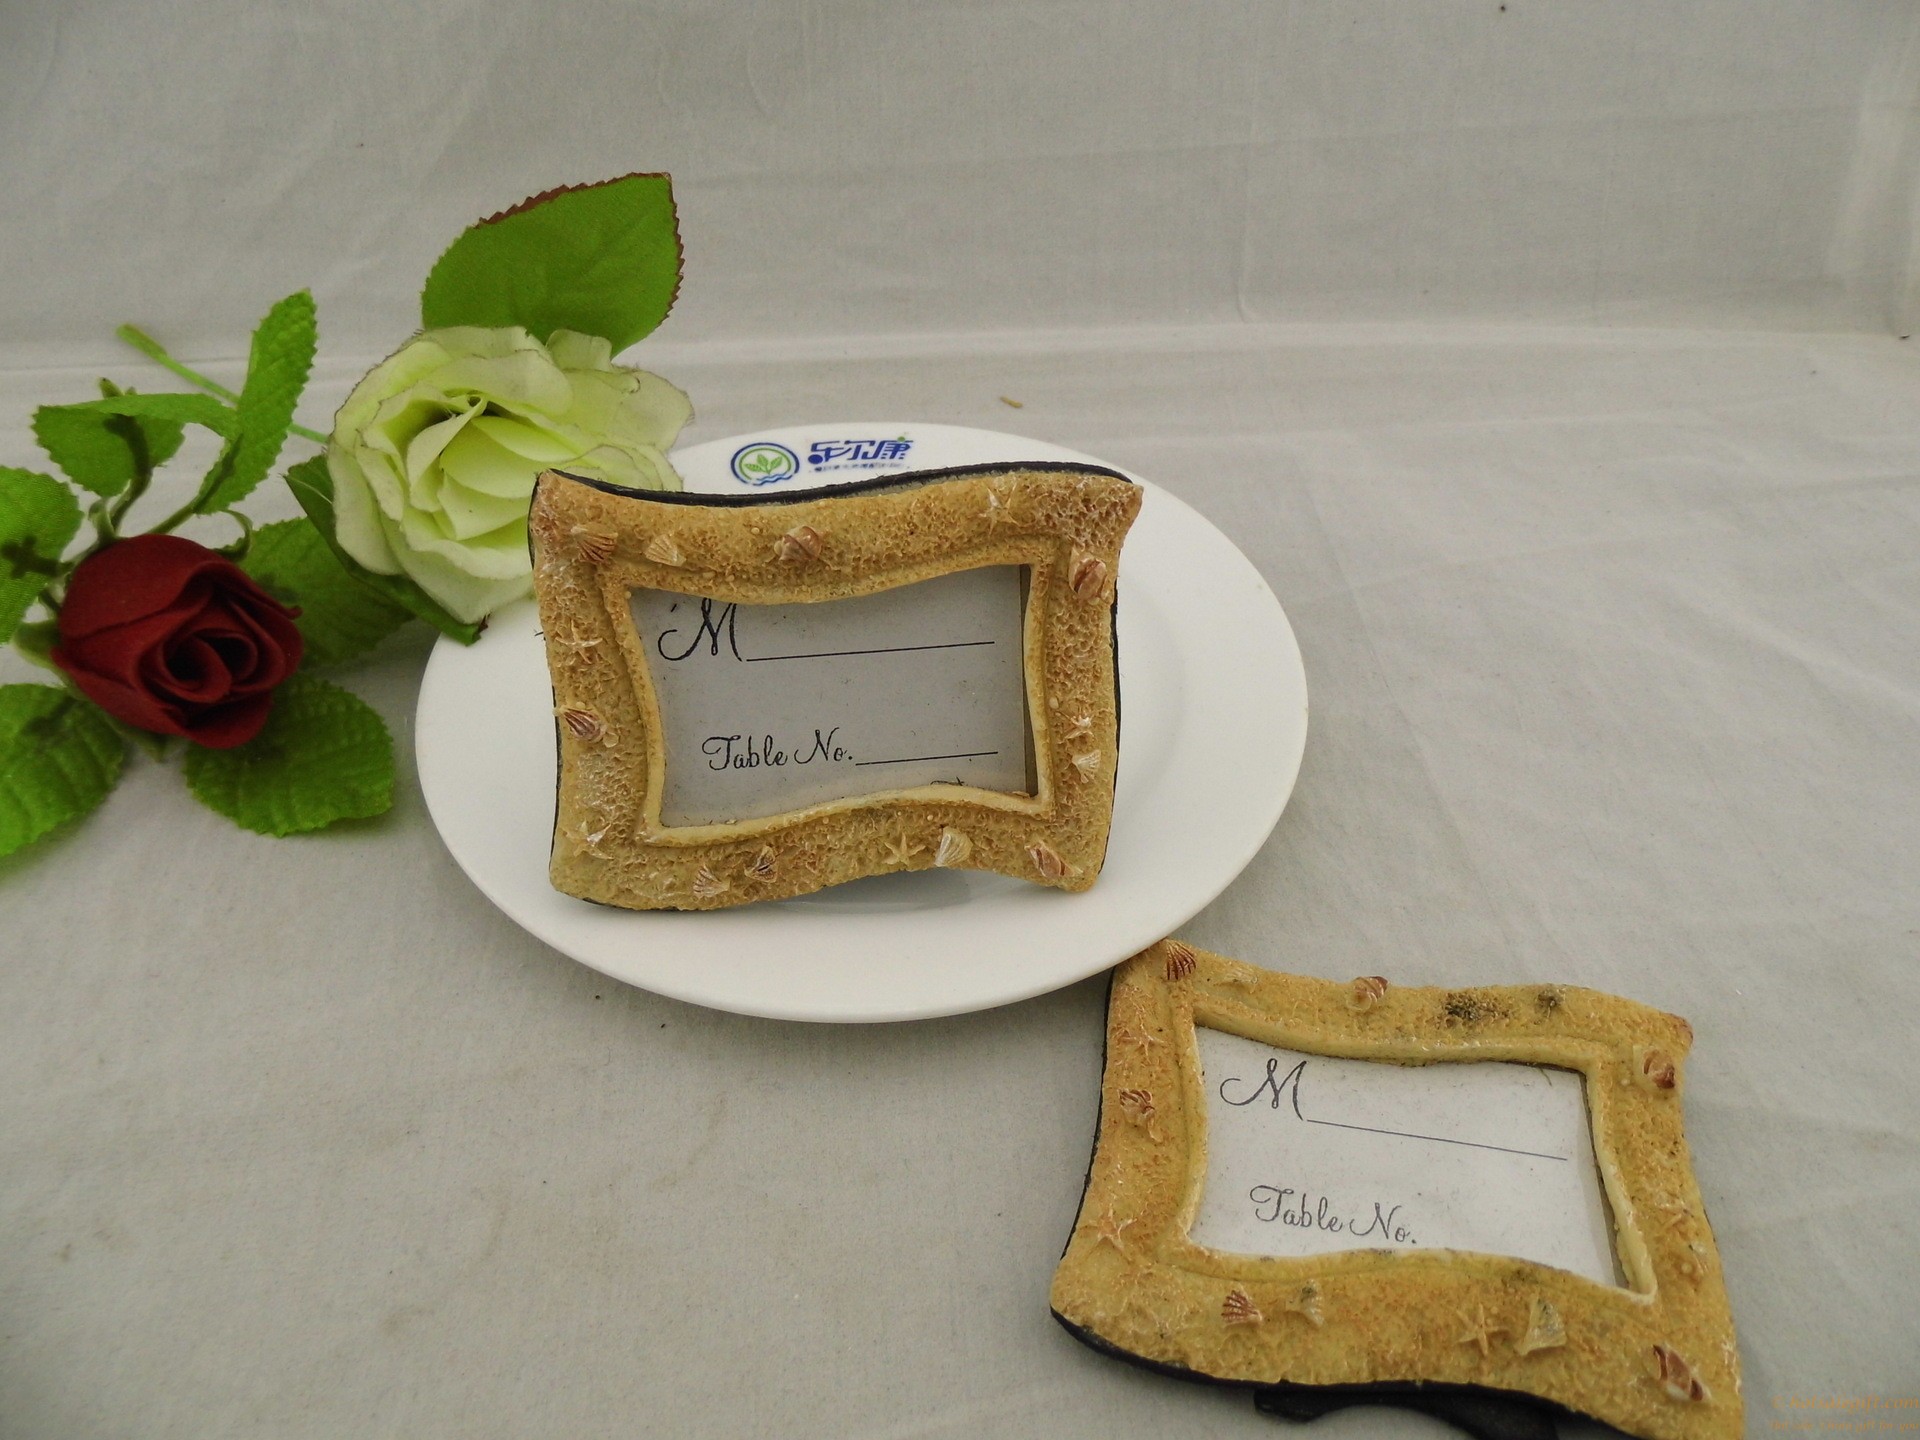 hotsalegift beachthemed photo frame resin place card holder favor wedding 2